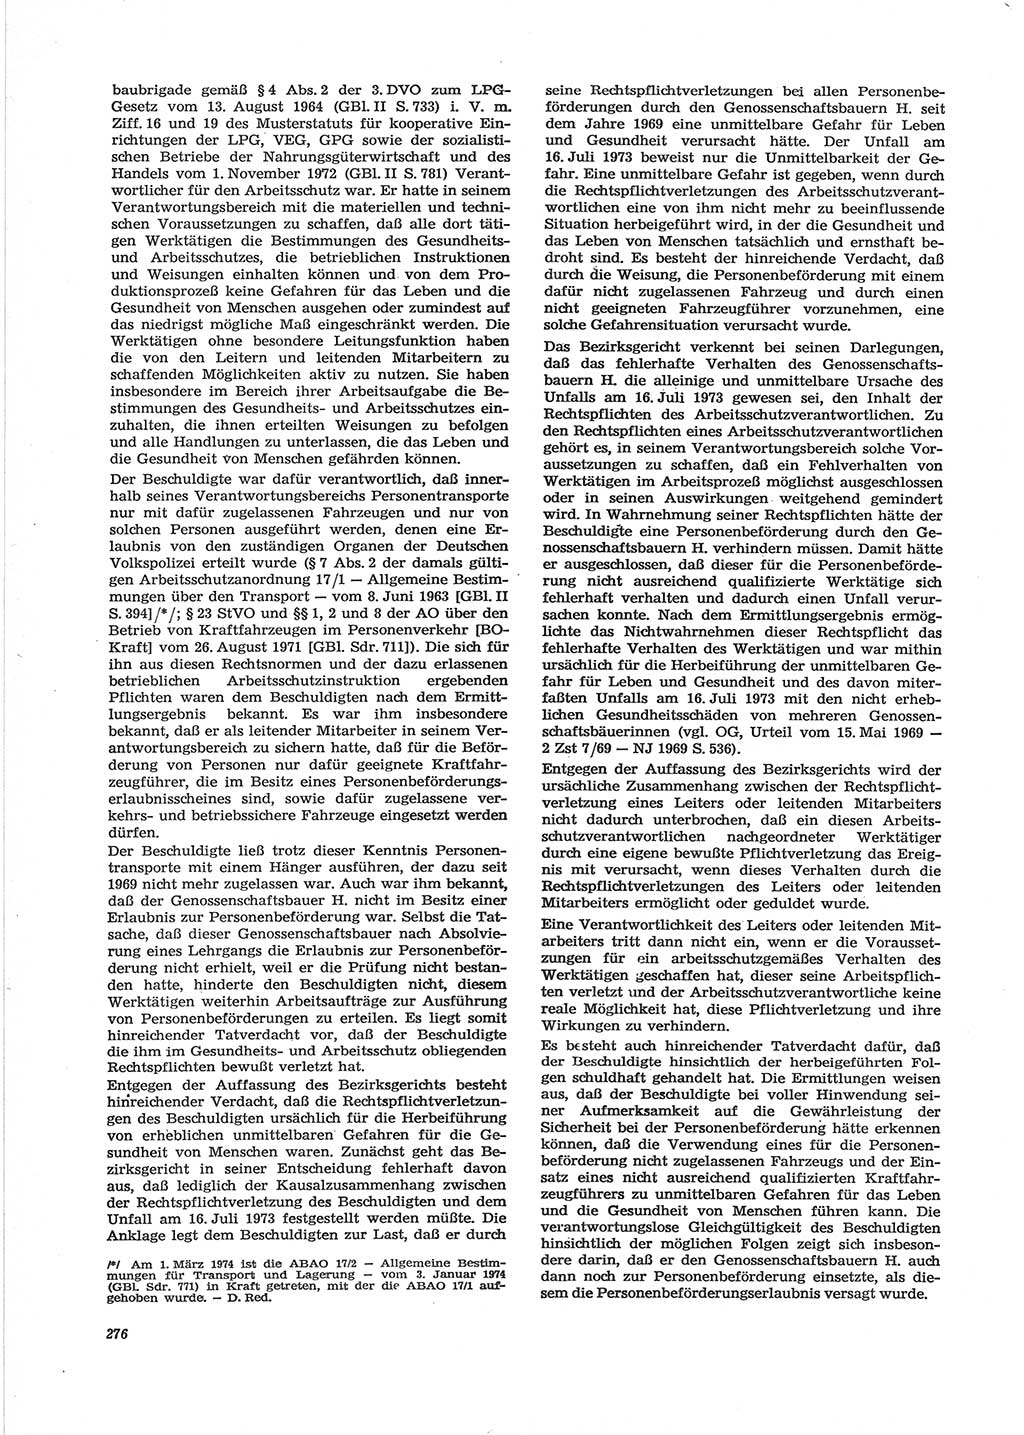 Neue Justiz (NJ), Zeitschrift für Recht und Rechtswissenschaft [Deutsche Demokratische Republik (DDR)], 28. Jahrgang 1974, Seite 276 (NJ DDR 1974, S. 276)